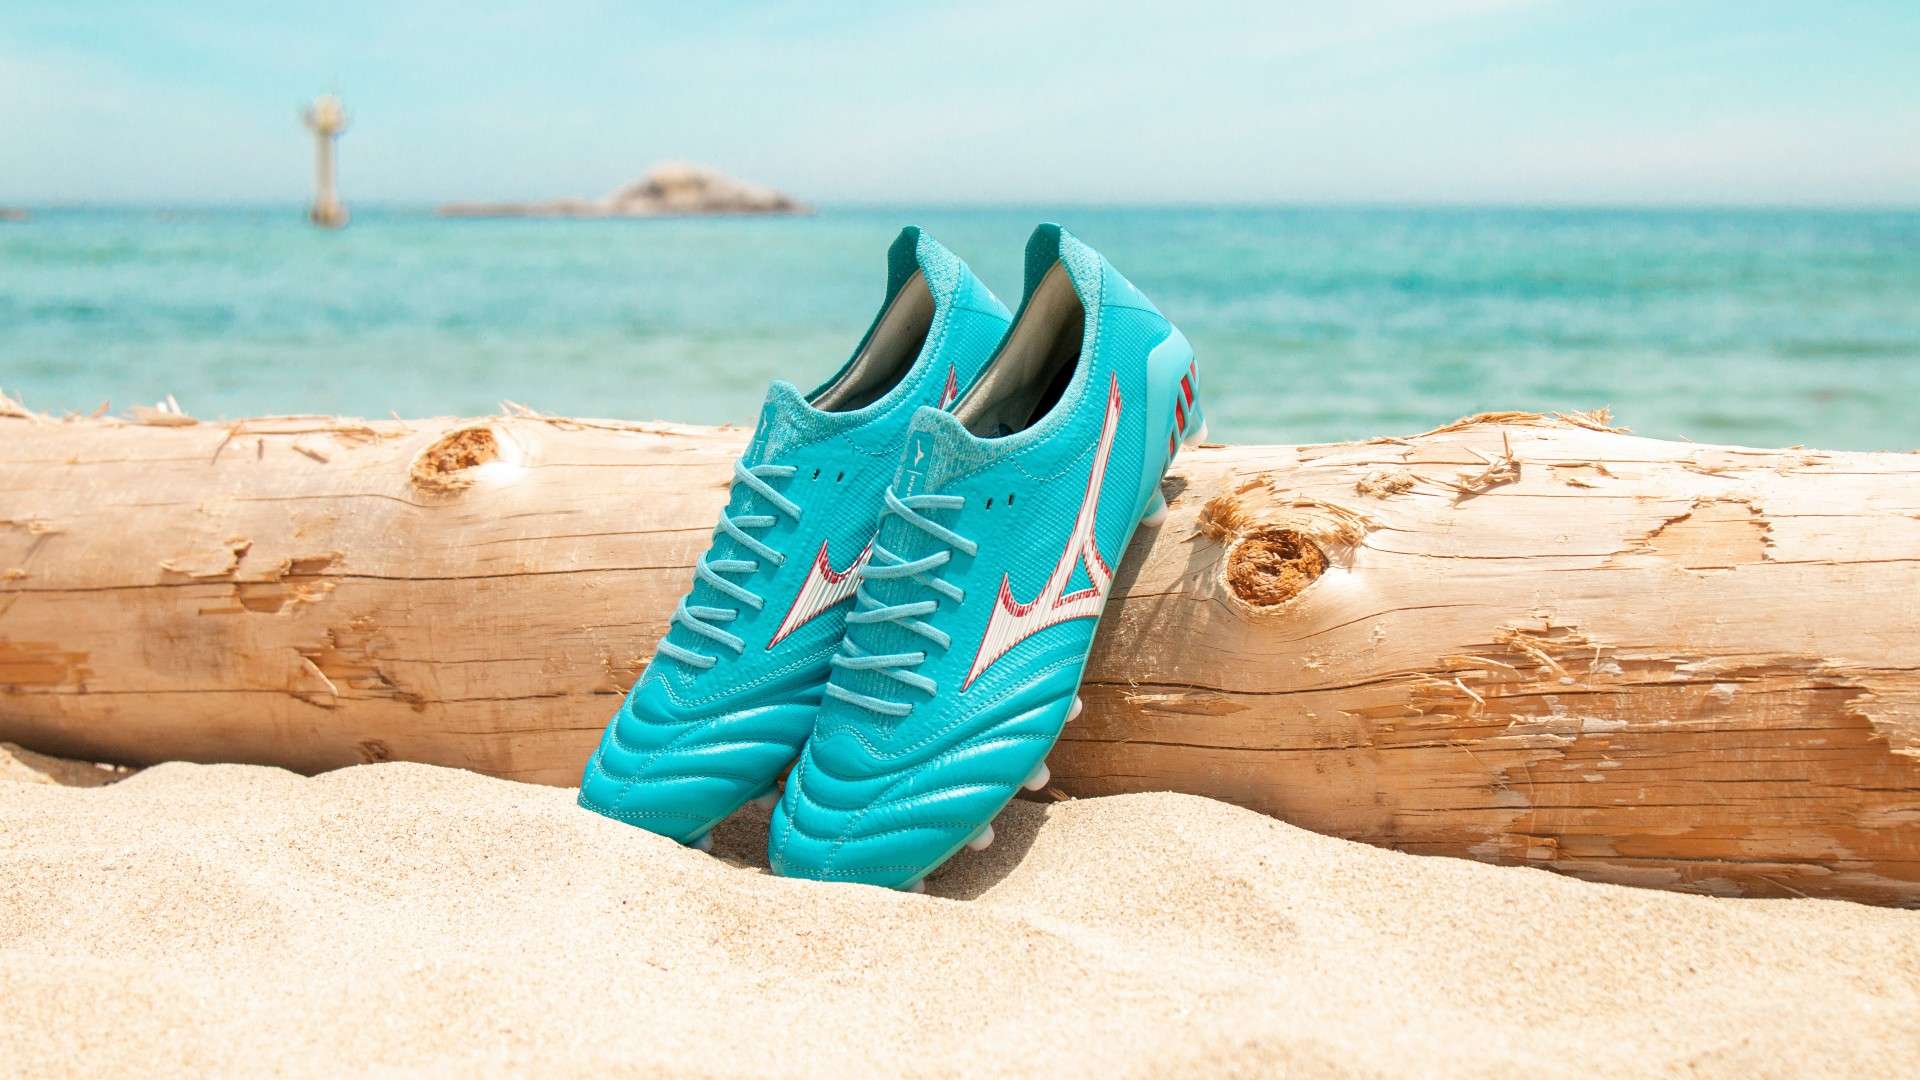 Mizuno Korea Blue Lagoon concept football boots